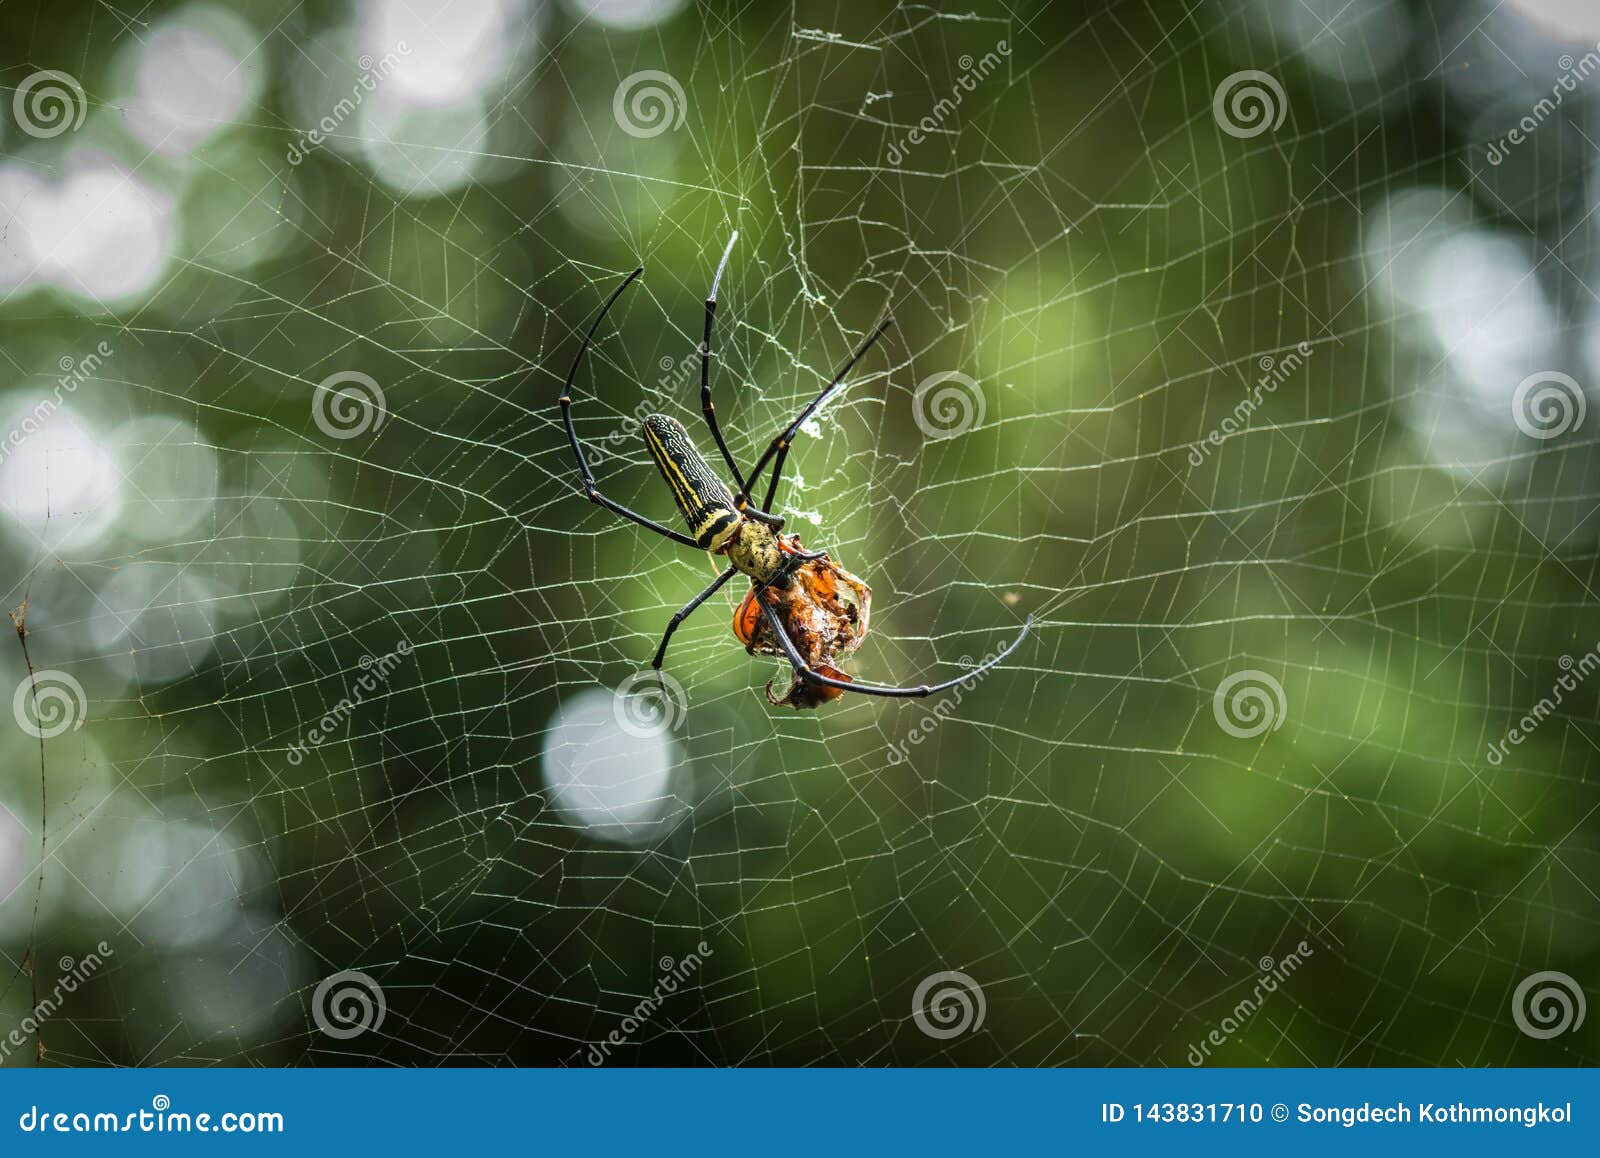 Nephila Giant Wood Spider Stock Photo - Image of beautiful: 143831710